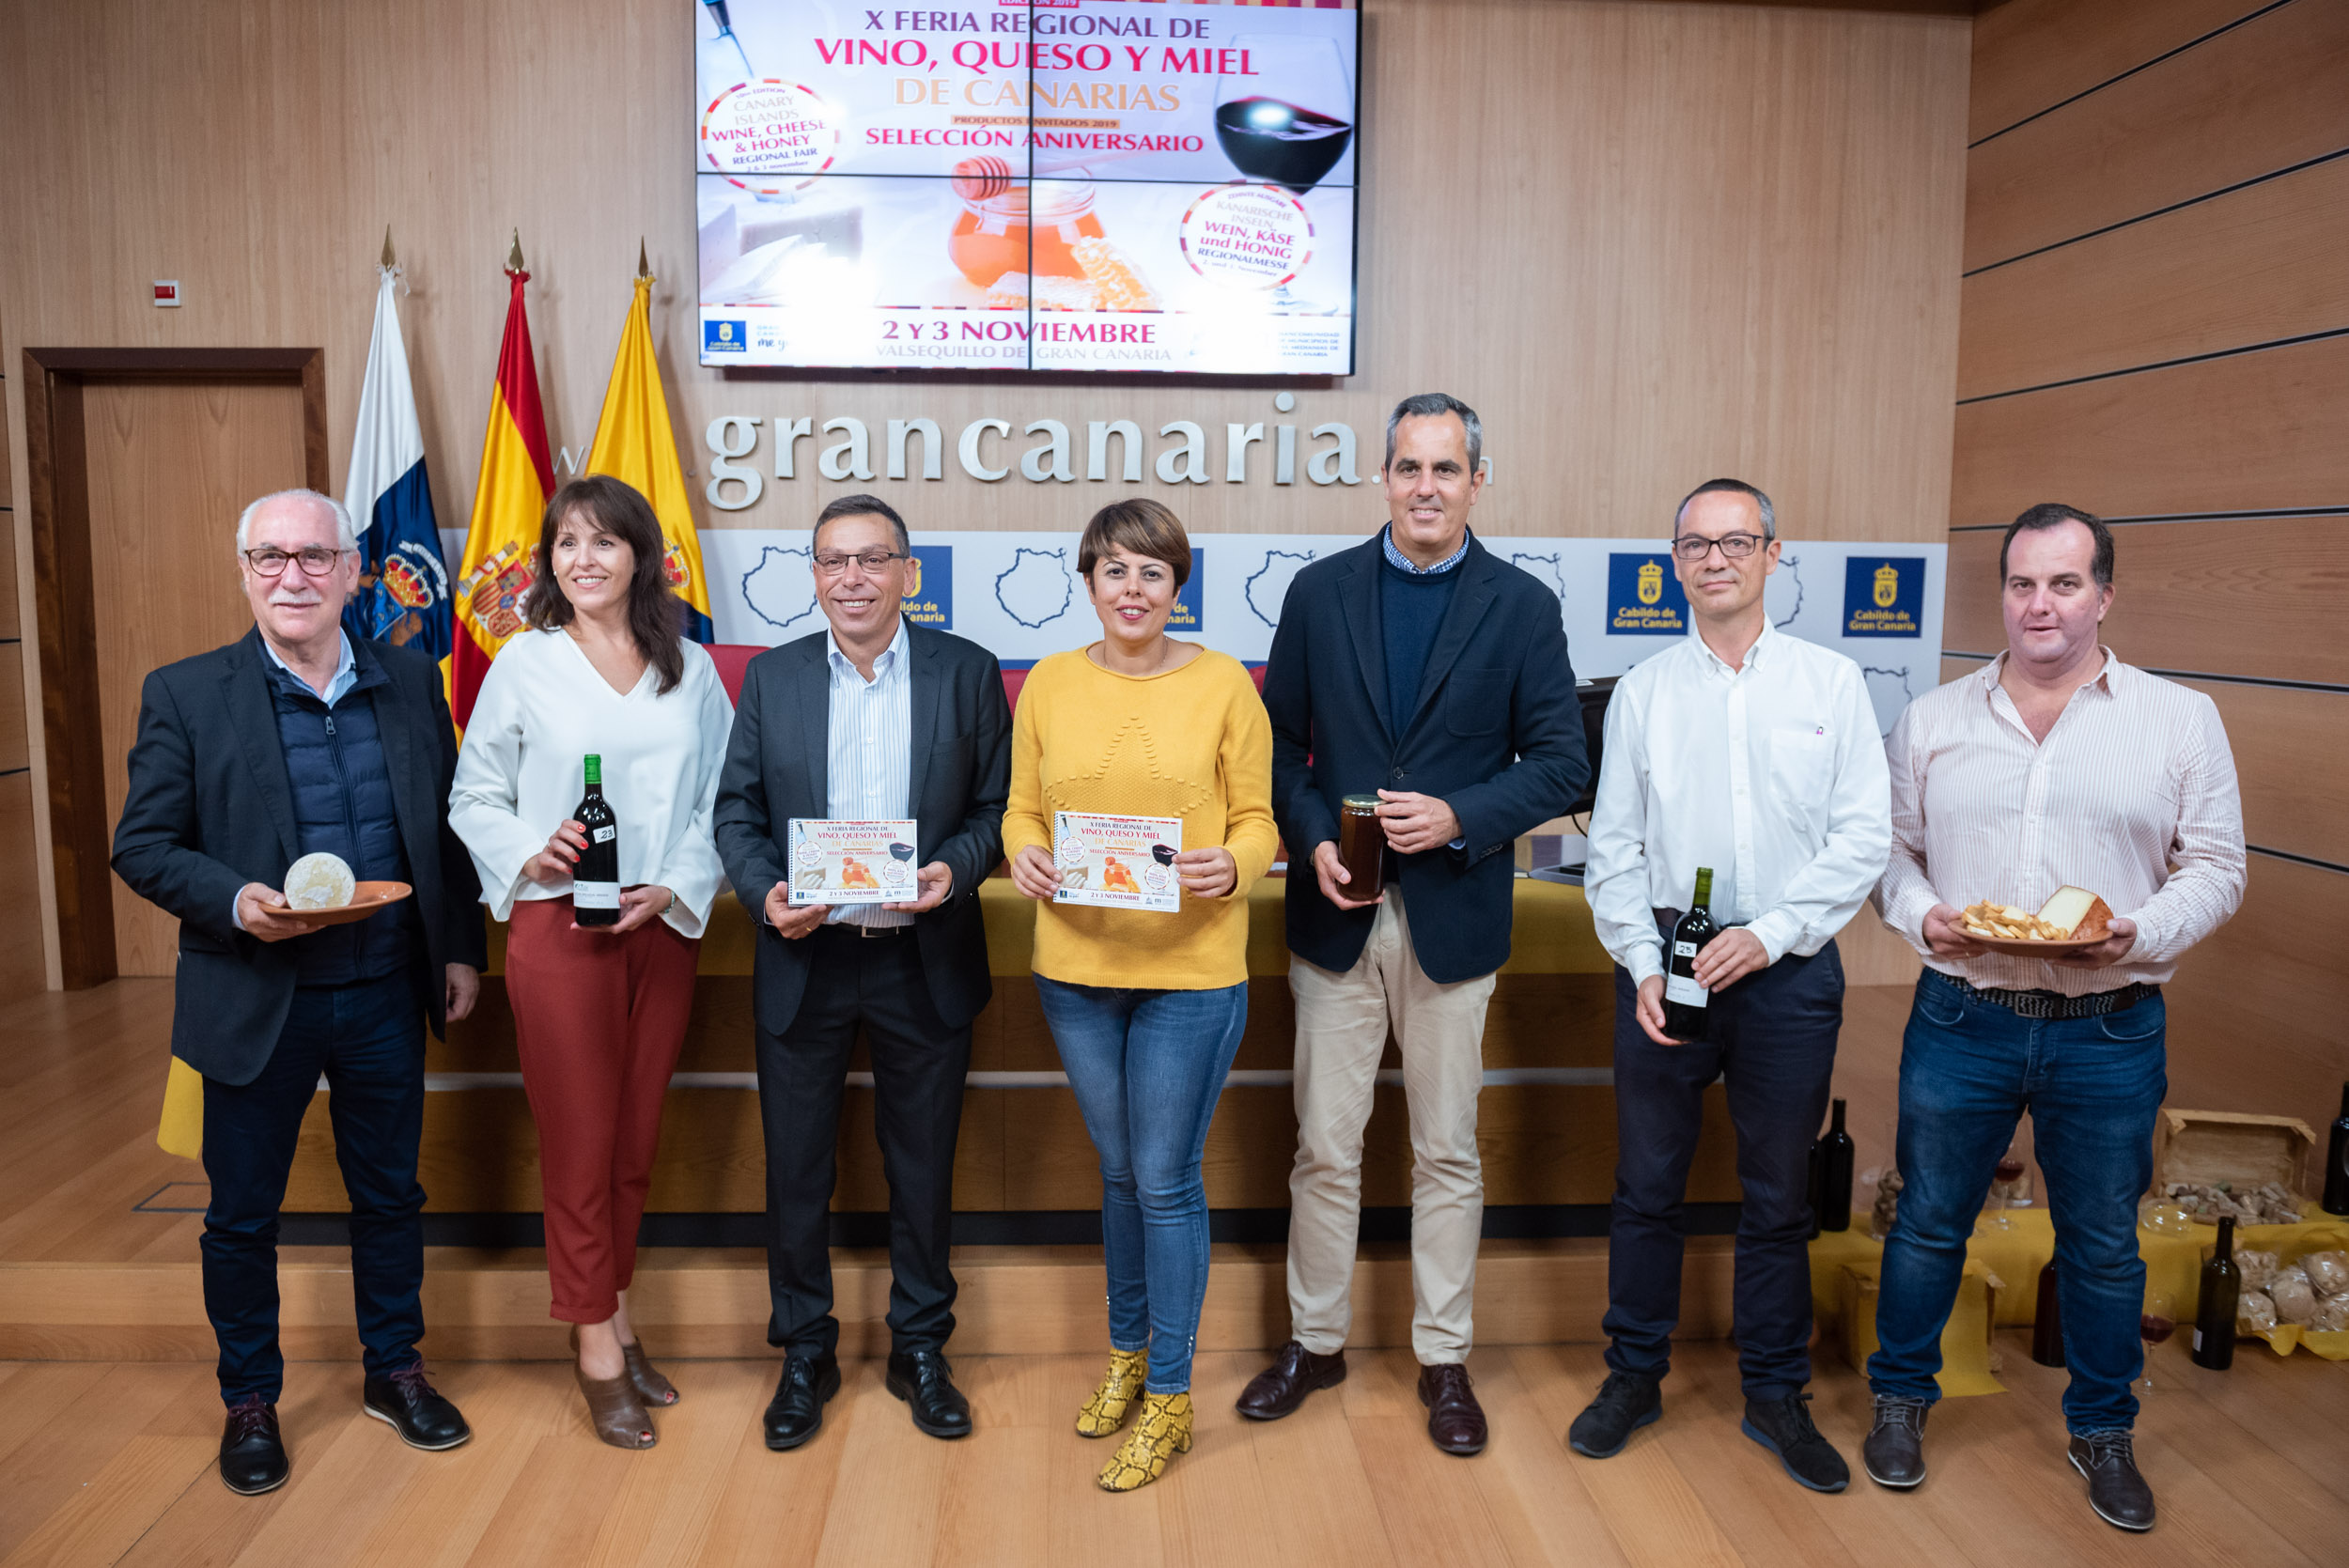 Gran Canaria celebra la Feria Regional de Vino, Queso y Miel con los productos estrella de sus diez ediciones